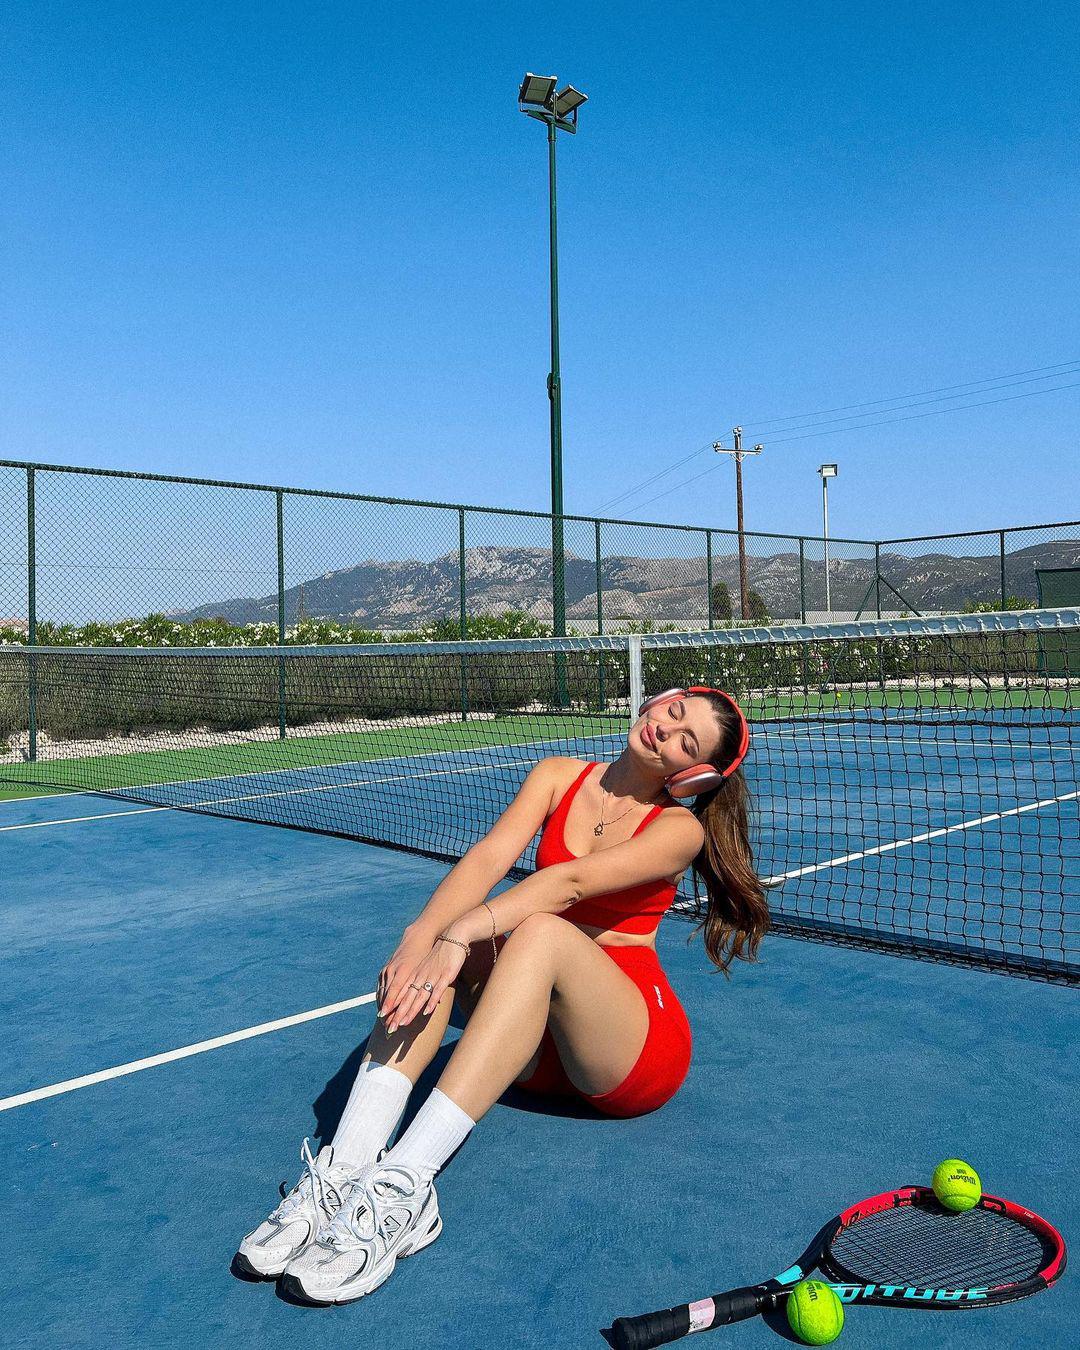 "Nàng thơ Thụy Sĩ" thu hút với váy ôm mặc khi chơi tennis - 11